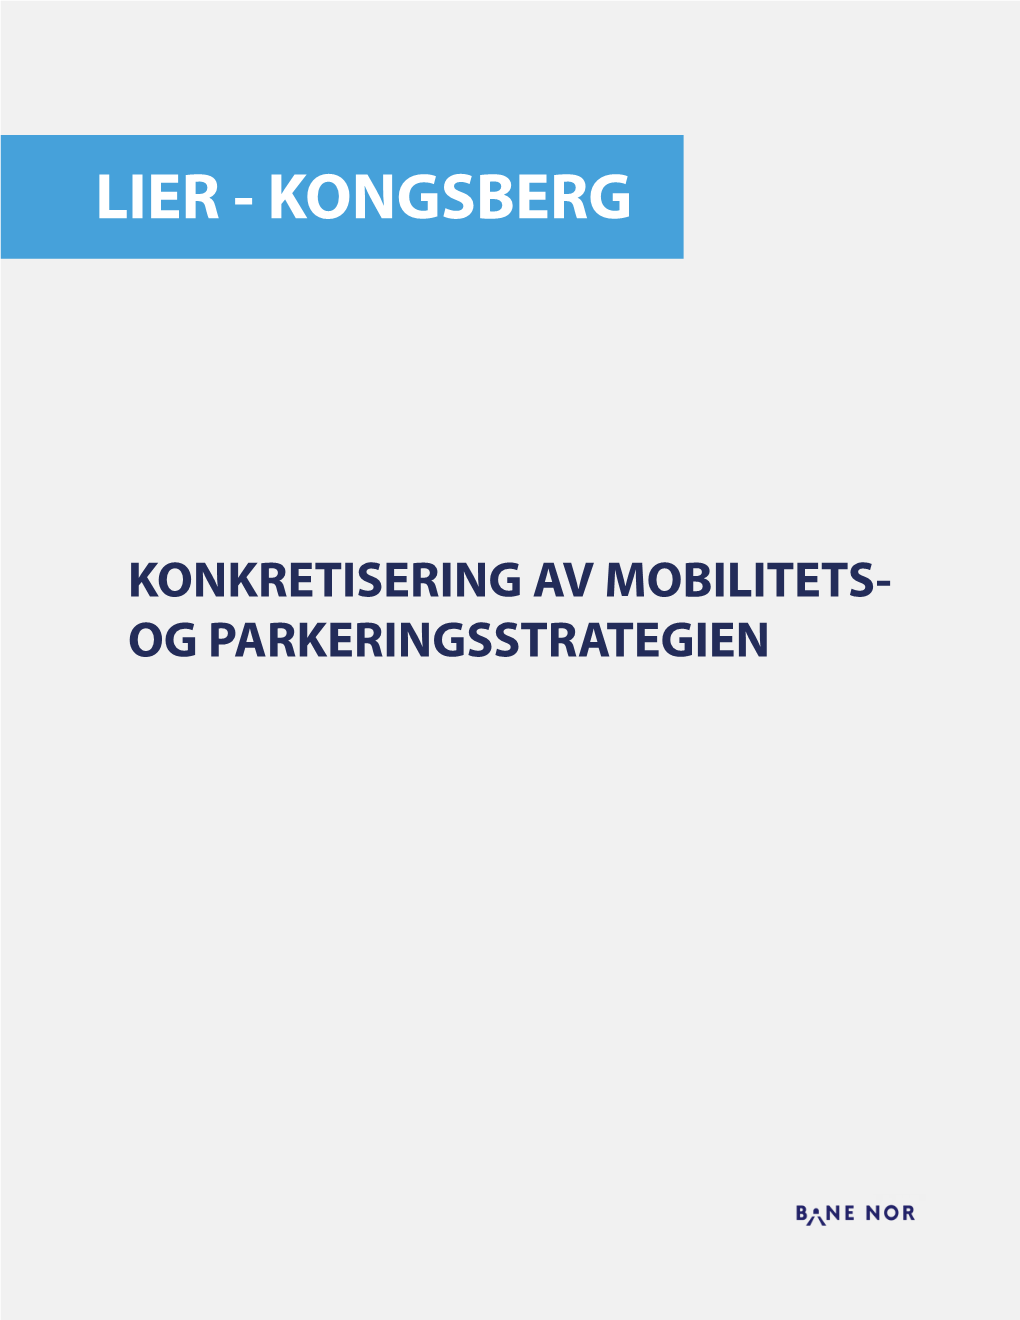 Parkeringsstrategi Lier-Kongsberg.Pdf